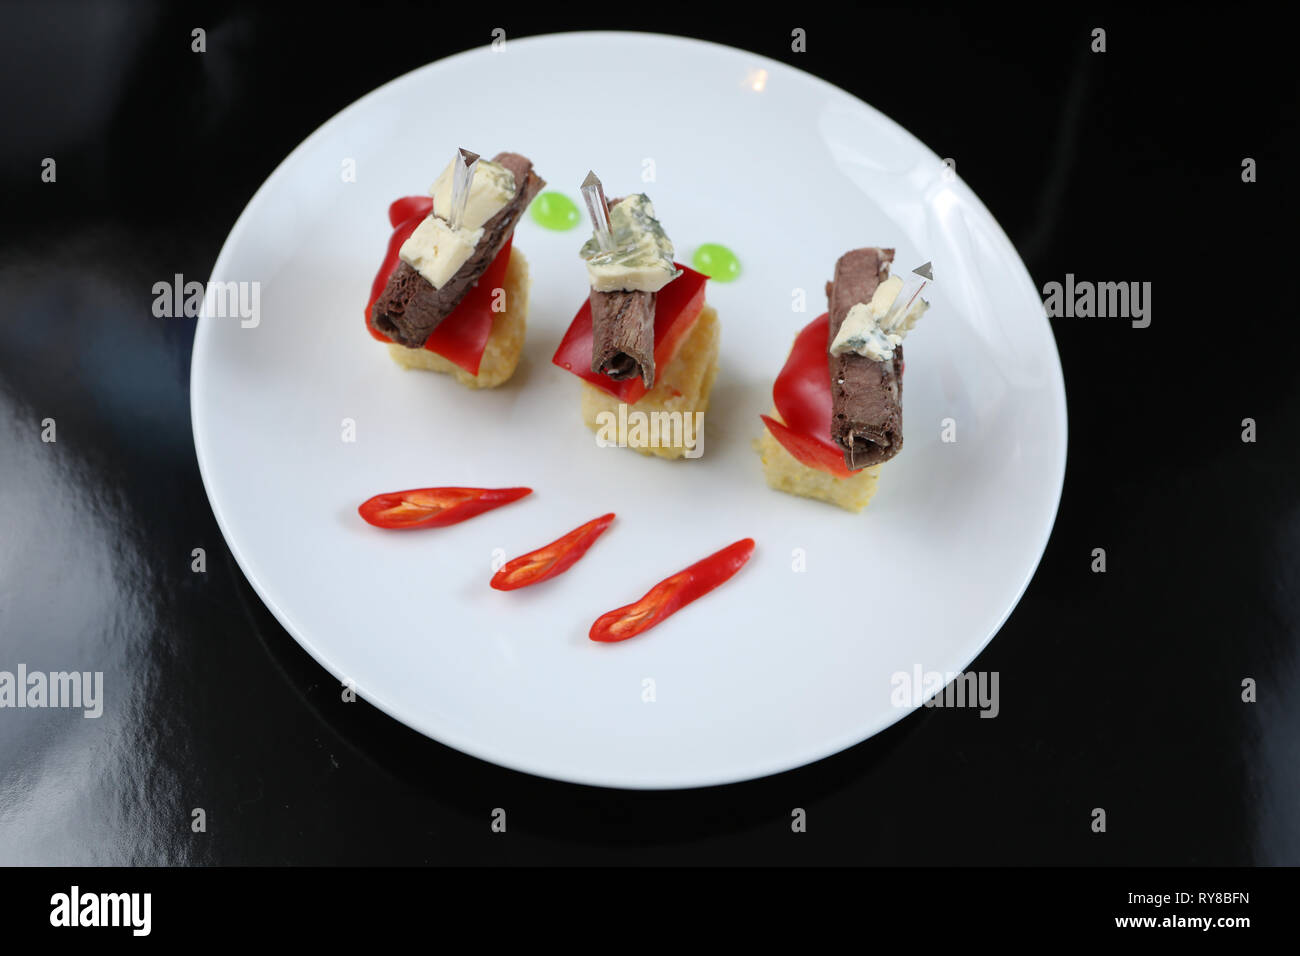 Viandes tranchées, roulé dans un rouleau, des canapés avec du fromage bleu et rouge, sur une brochette, close-up, pour le menu Banque D'Images